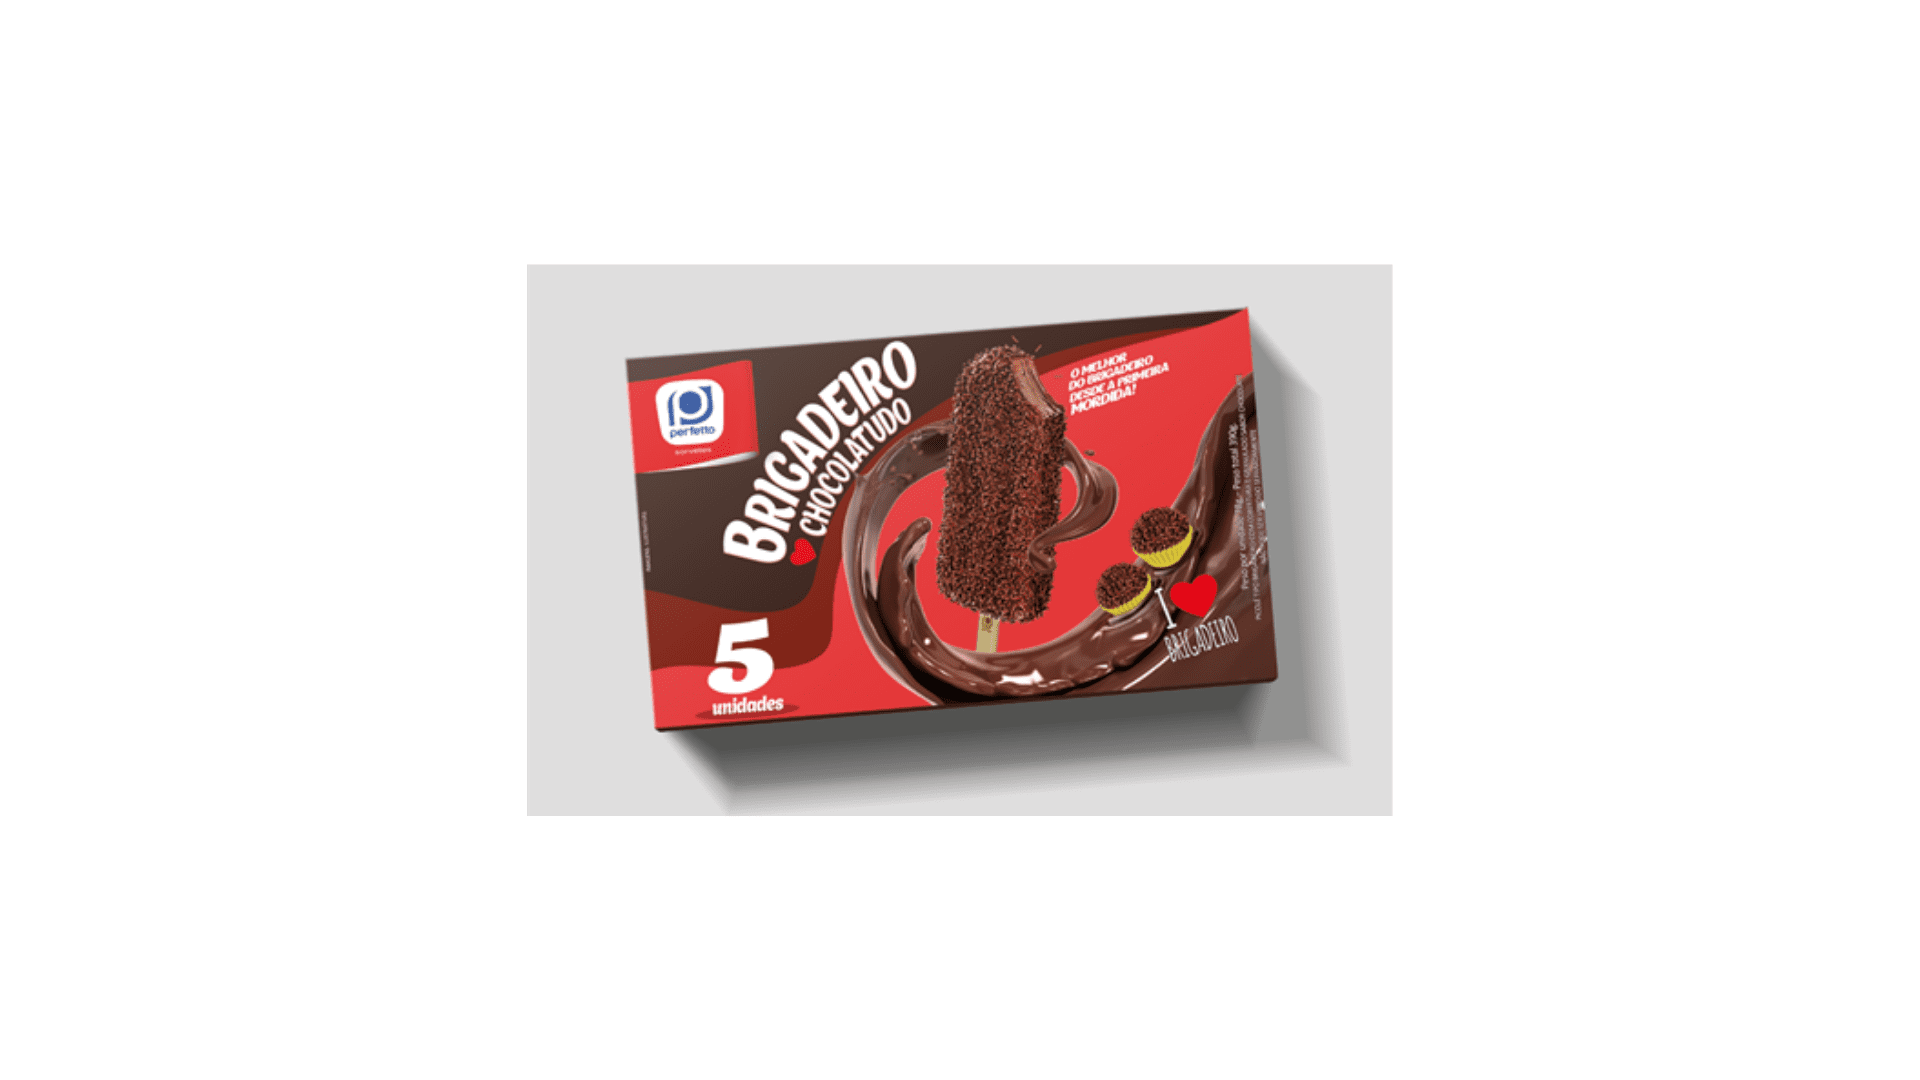 Featured image for “Perfetto relança picolé de brigadeiro chocolatudo em embalagem multipack”